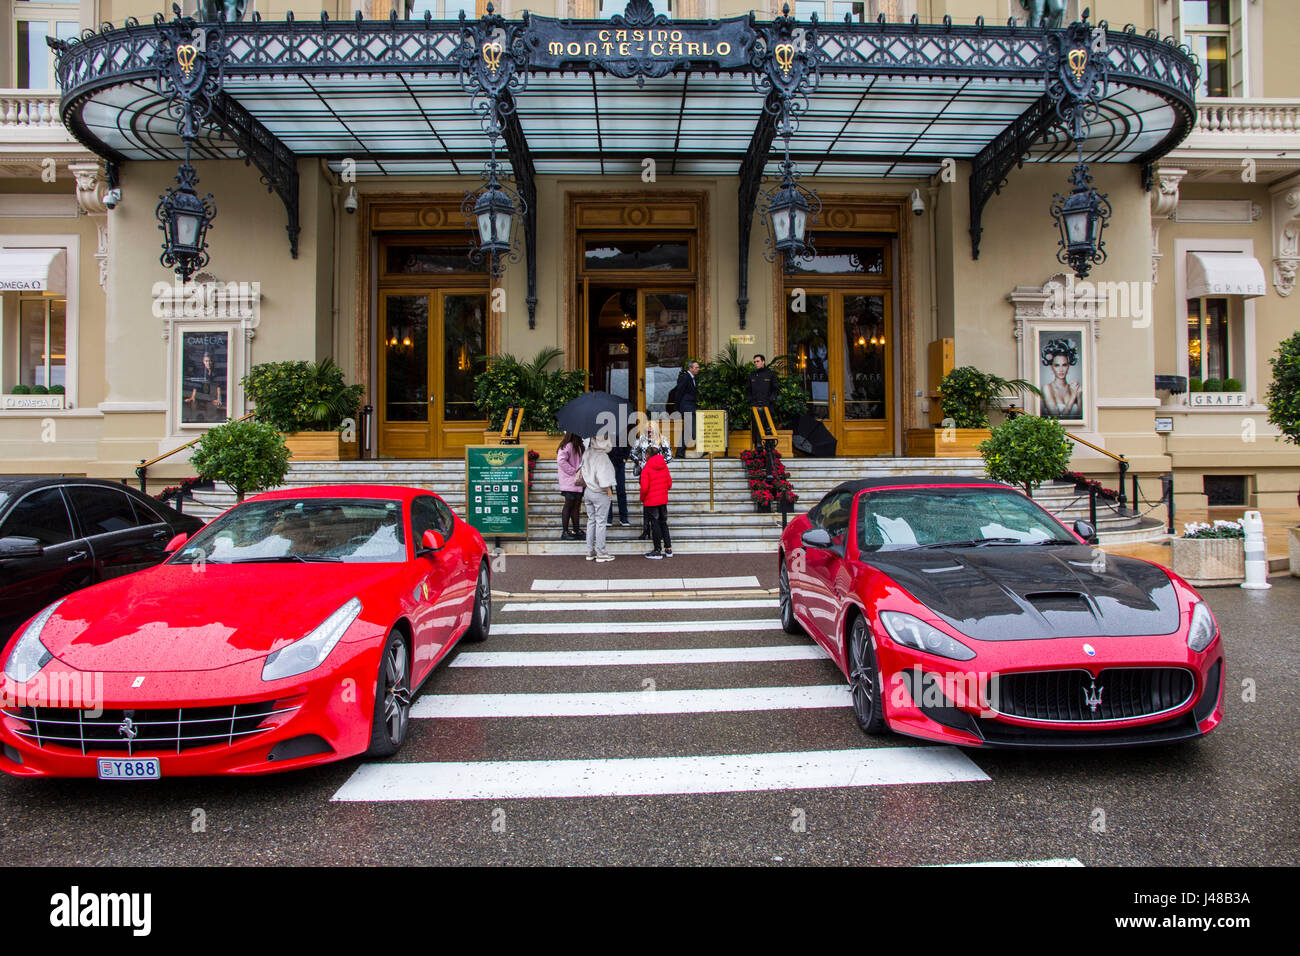 Los coches de lujo flanquean la entrada del Casino Monte Carlo, Monte Carlo, Mónaco. Foto de stock